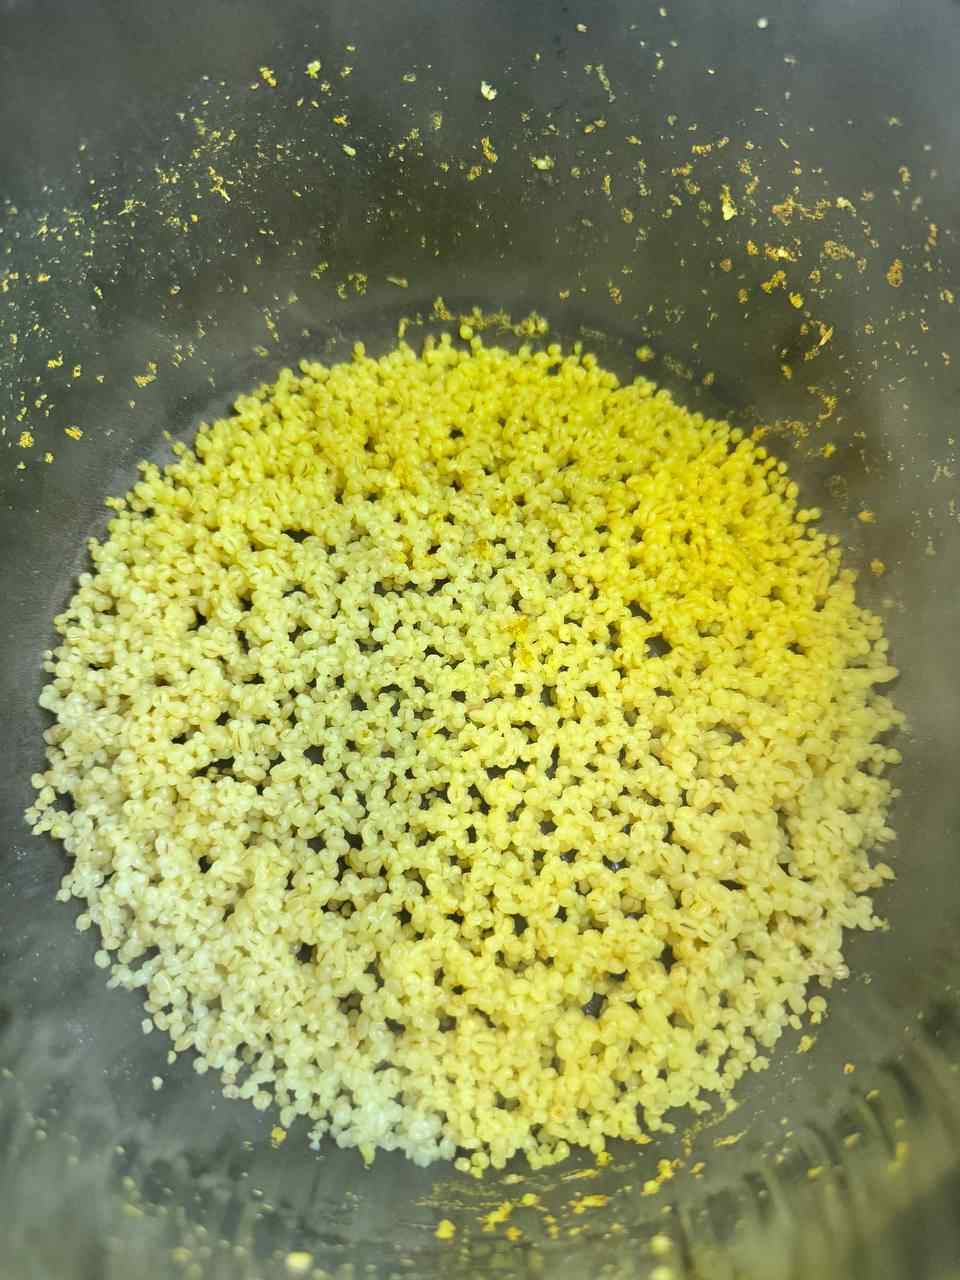 Nach ca. 45 Minuten sind die Perlgraupen im Reiskocher fertig und sehen so aus